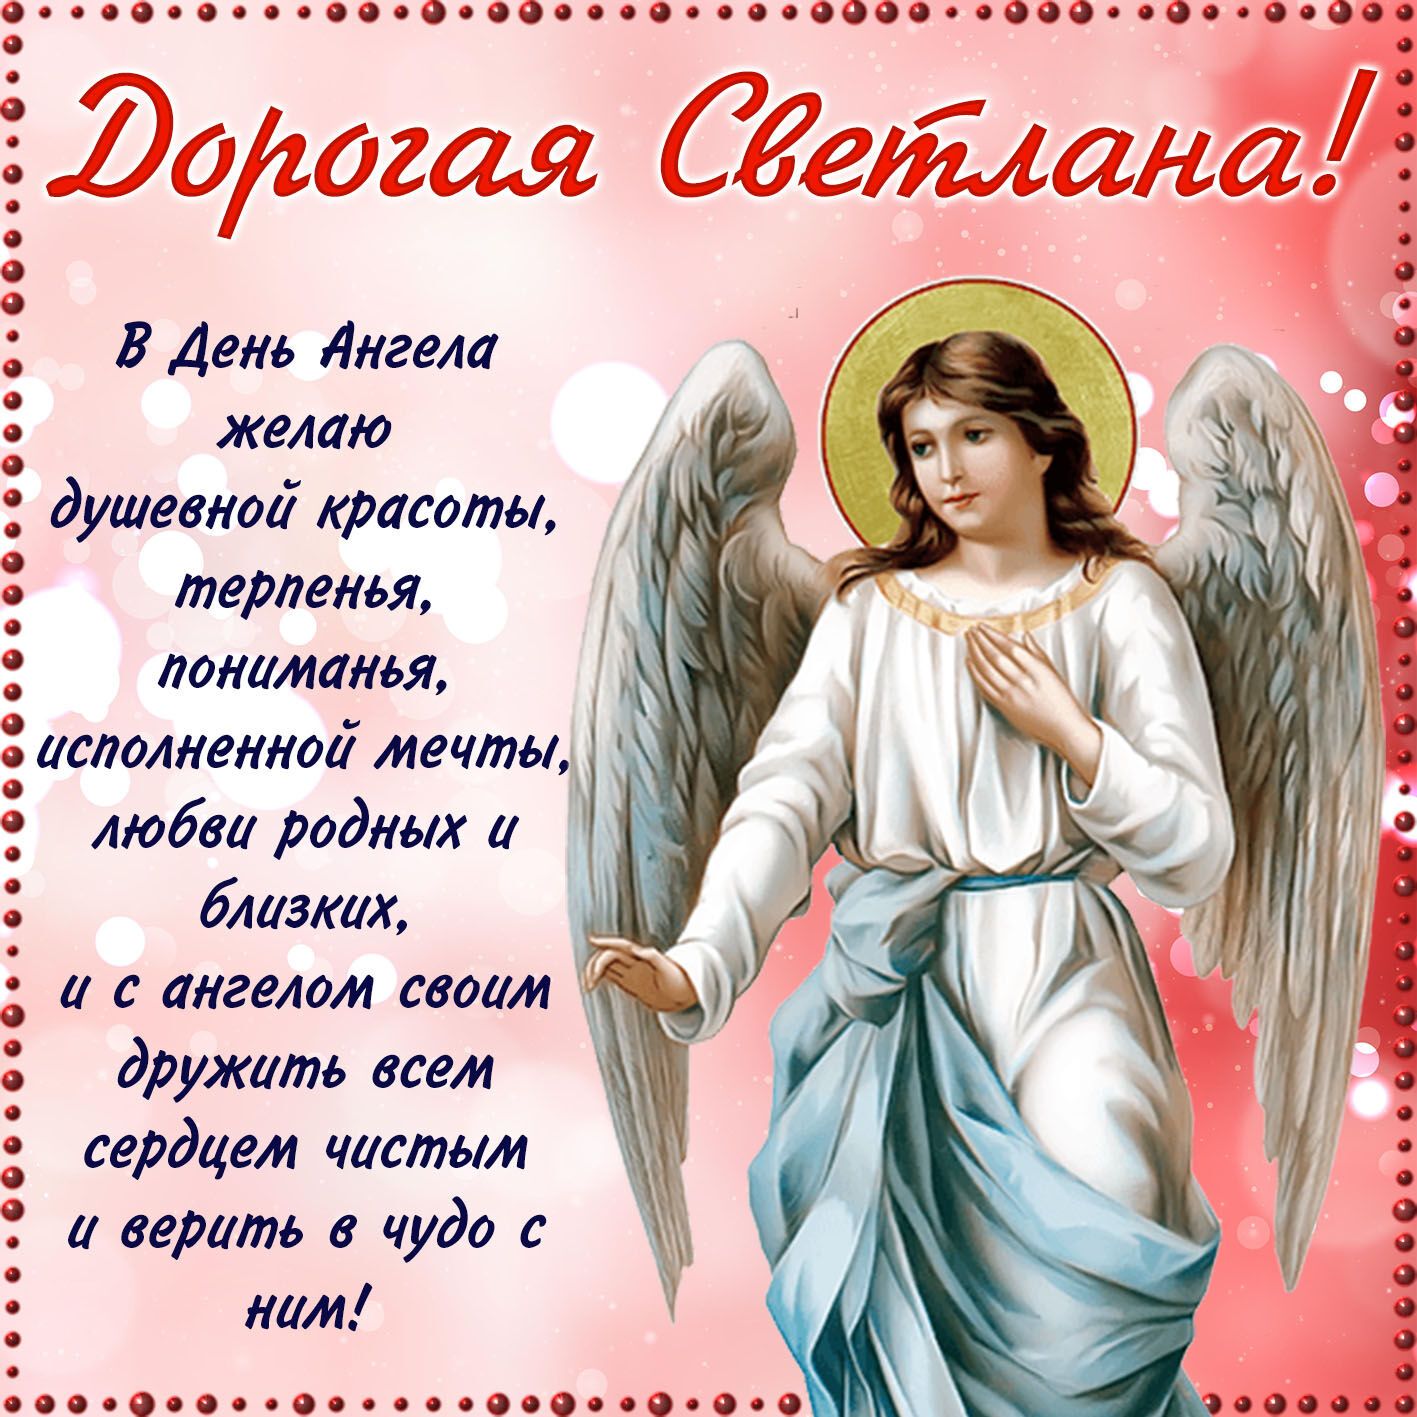 С именинами, Светлана! Оригинальные открытки для поздравления на День ангела